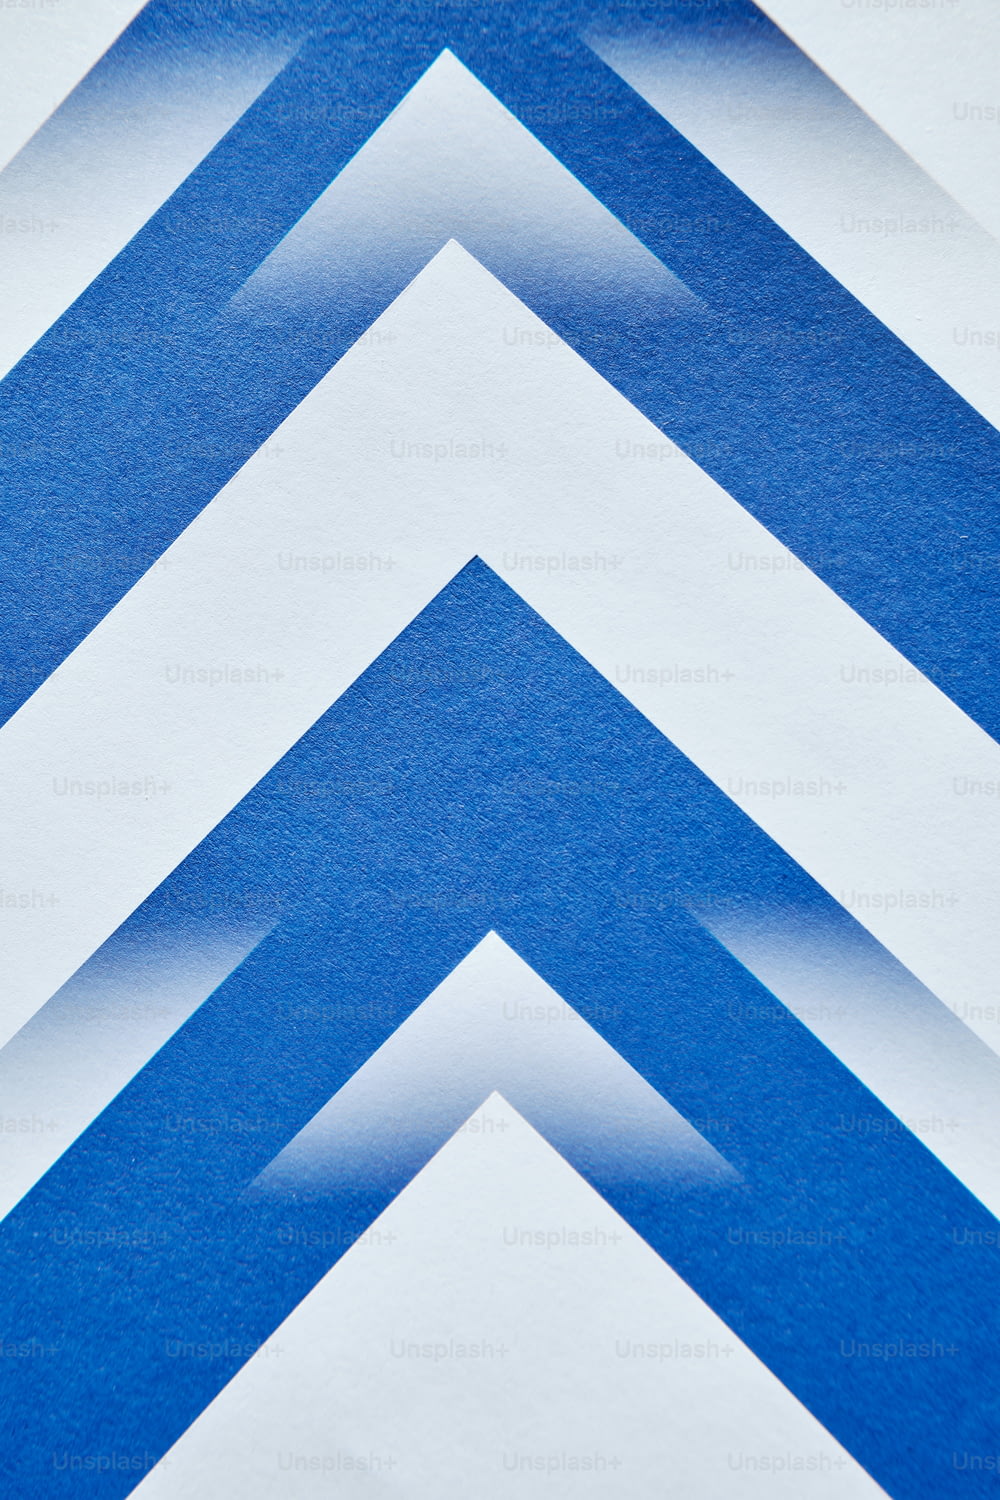 um close up de uma parede listrada azul e branca